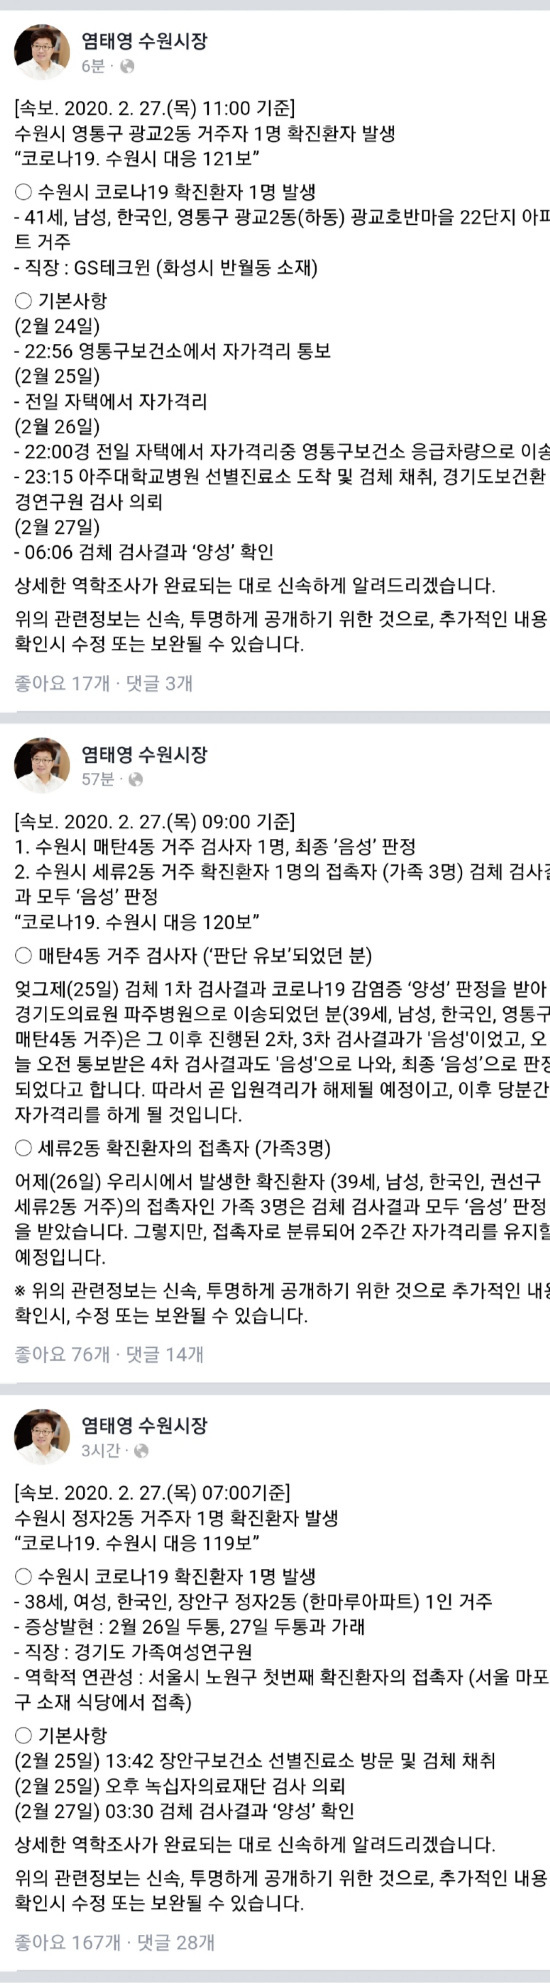 [Corona 19 Domestic Status Suwon-si] Confirmación adicional de Jungja 2-dong y Gwanggyo 2-dong (noticias de última hora)